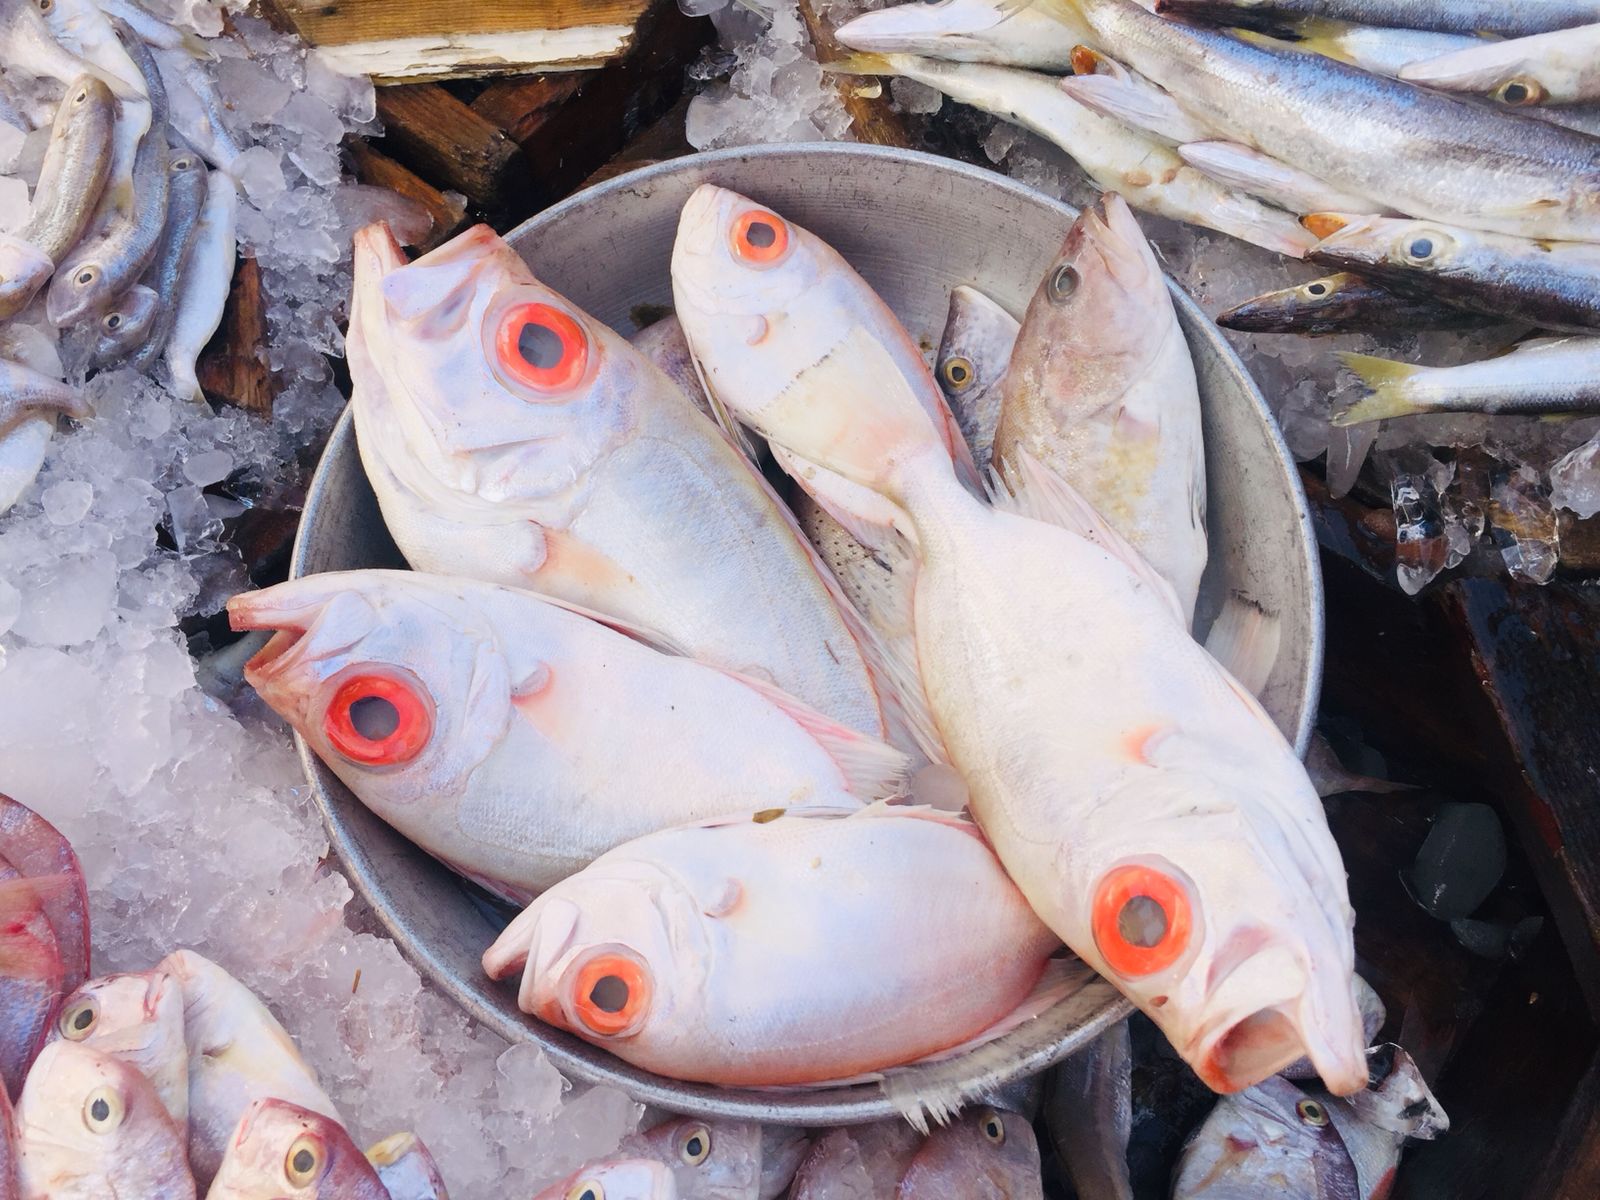 سوق الأنصارى للأسماك بمحافظة السويس (9)